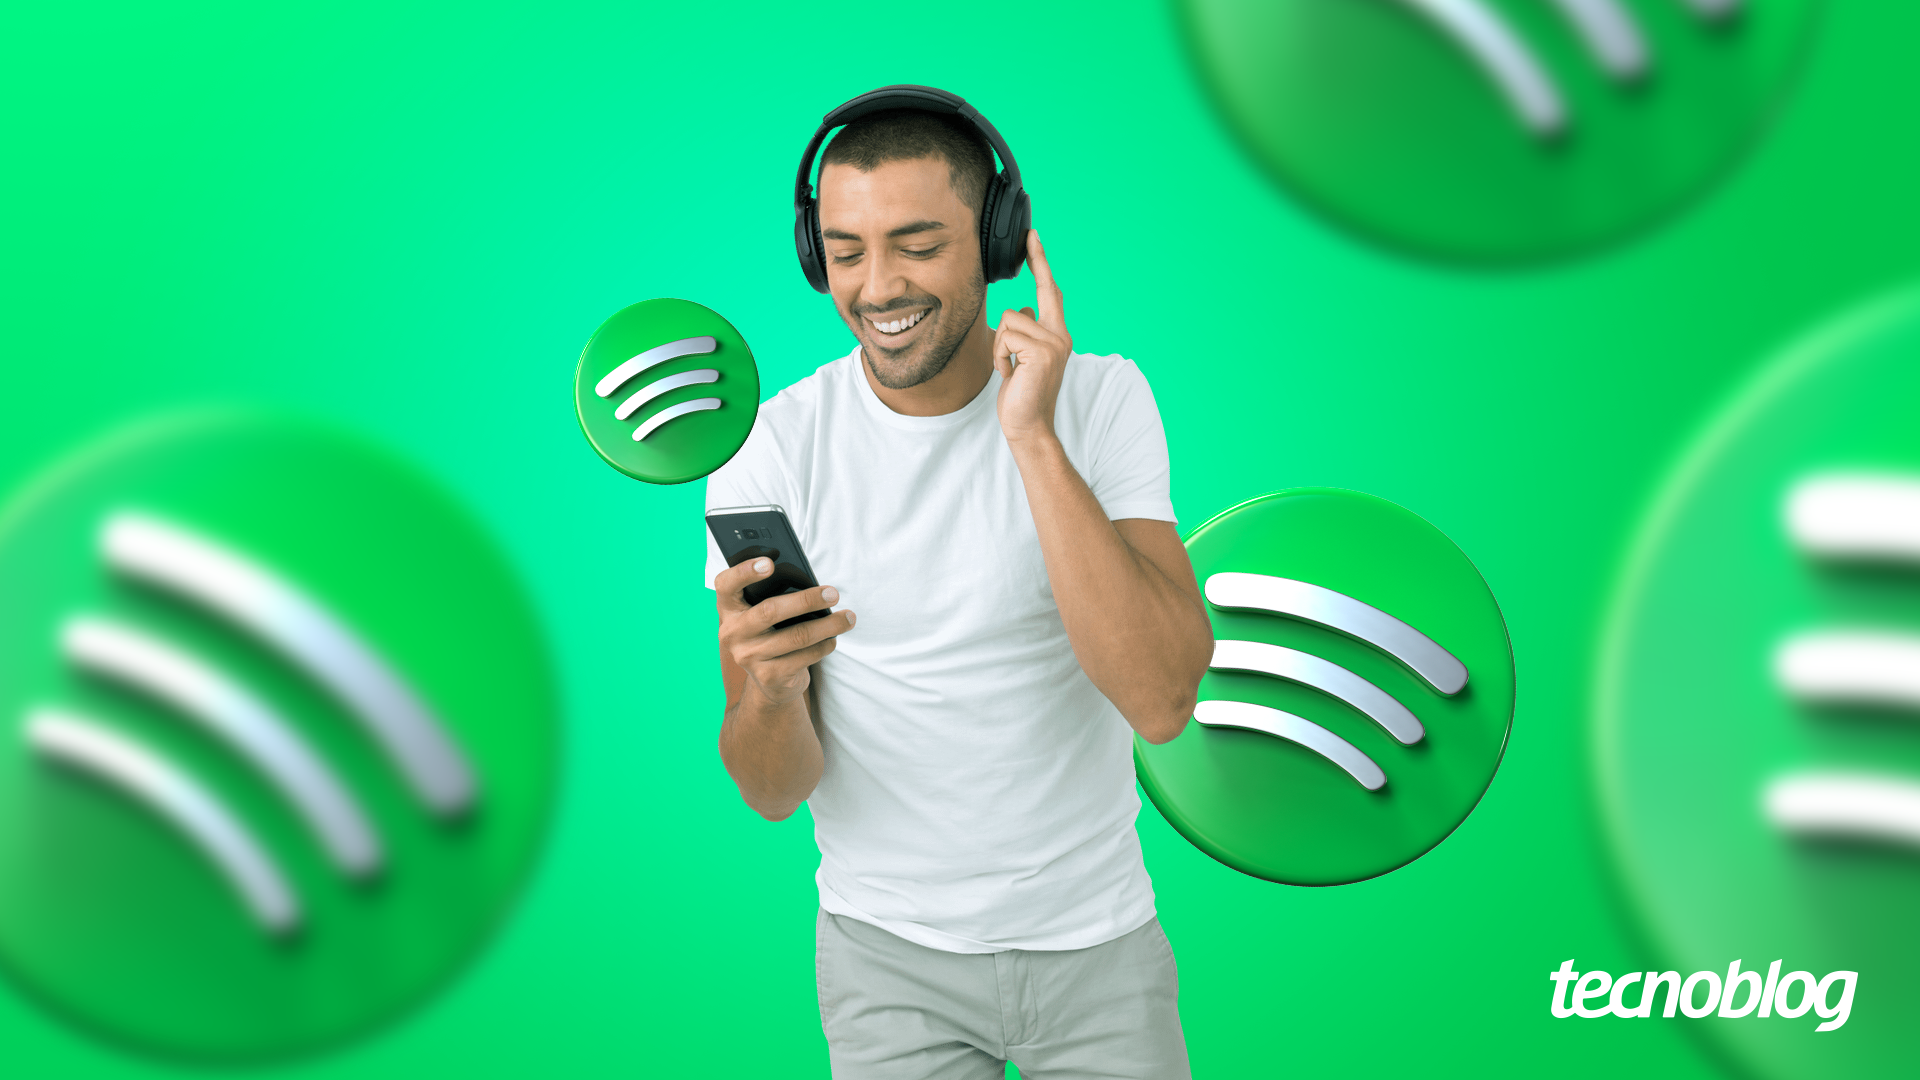 Cartão Spotify Premium - R$ 50 Reais - Assinatura 3 Mêses